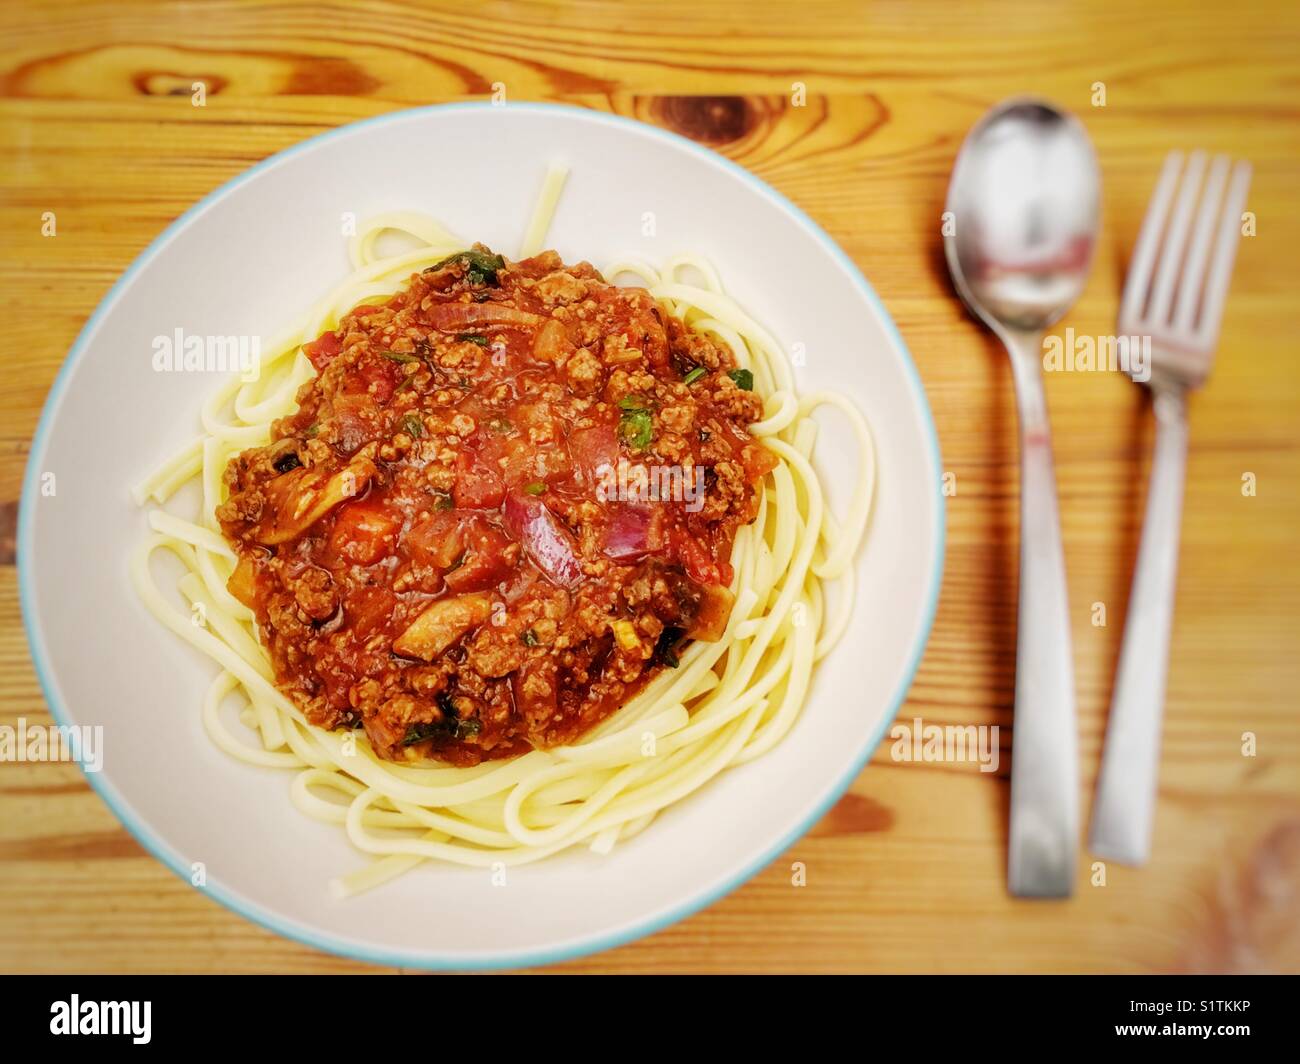 Carne priva spaghetti alla bolognese fatta con Quorn tritate Foto Stock